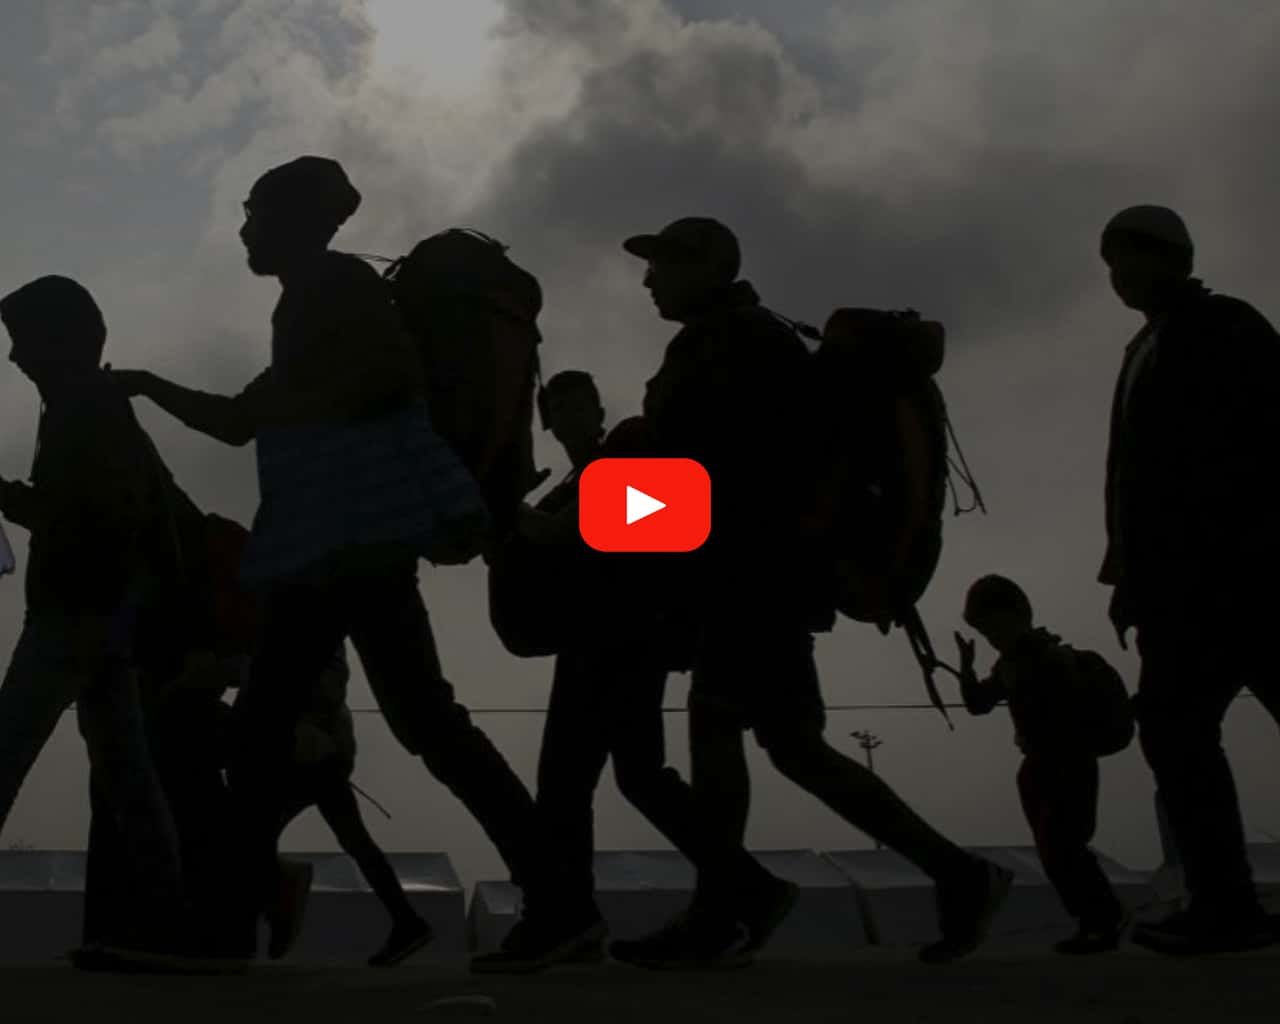 Video 1. “Compartiendo el viaje; mi historia, una página de la migración